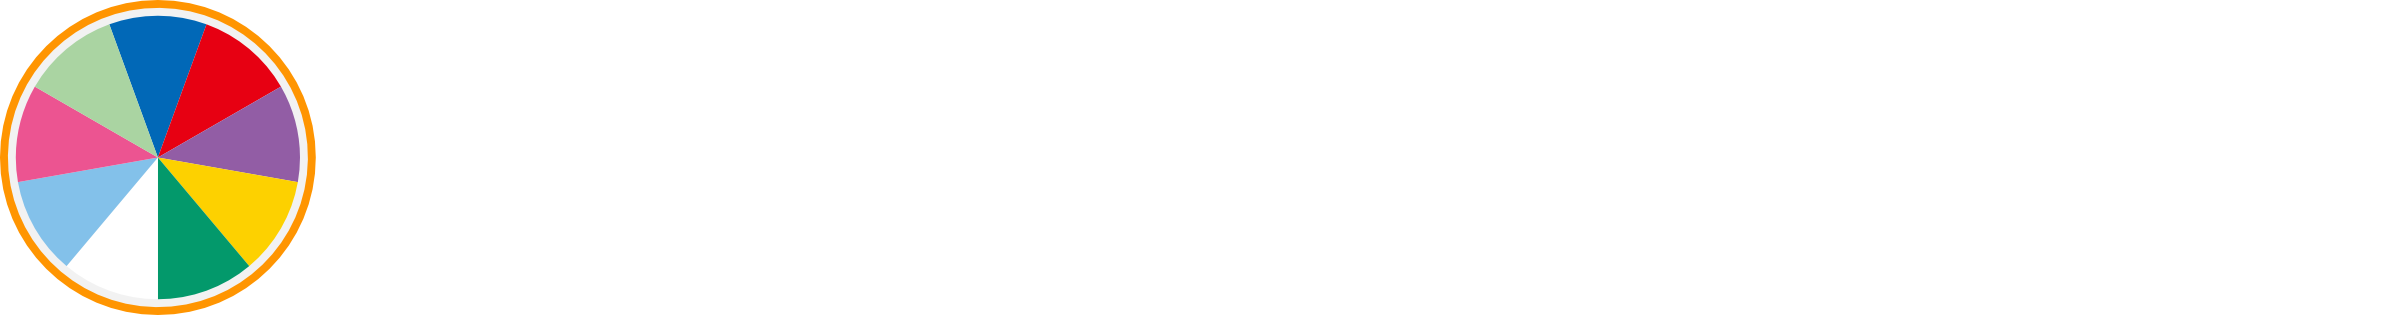 Kiramune☆Fan